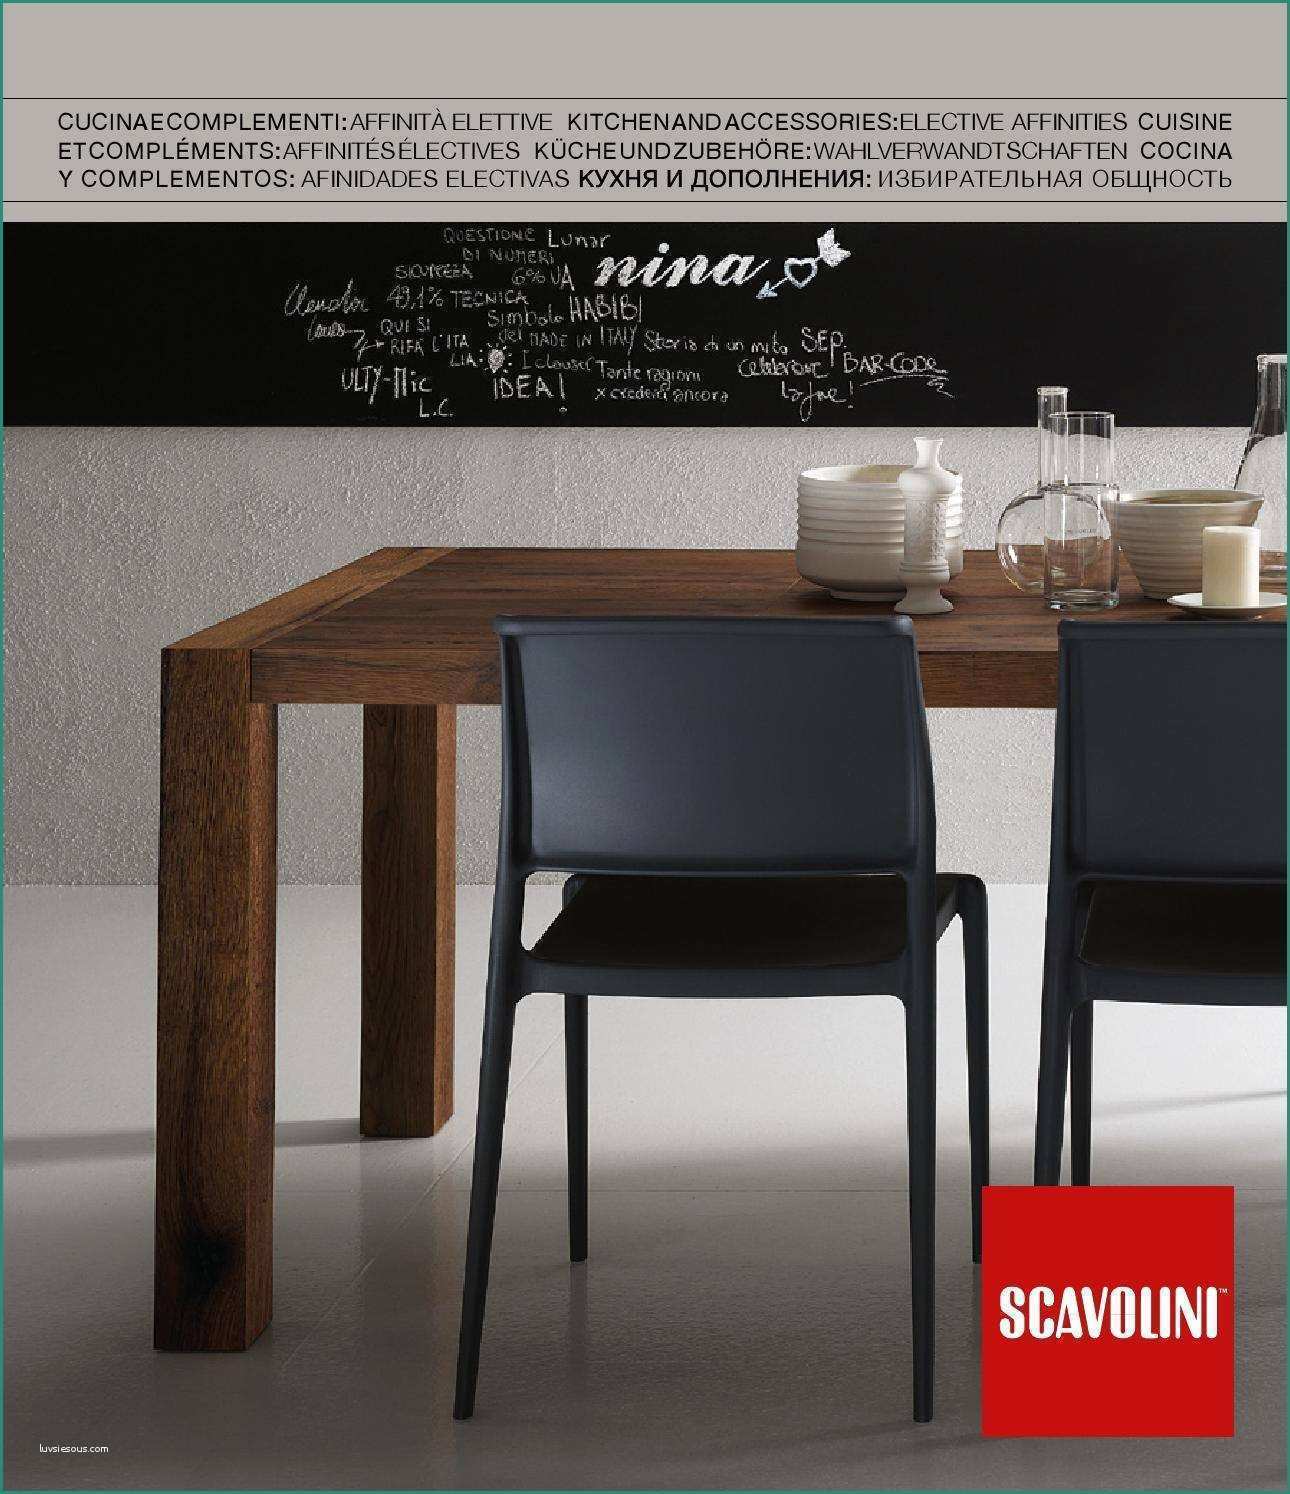 Cucine Economiche Moderne E 35 Sereno Tavoli E Se Moderni